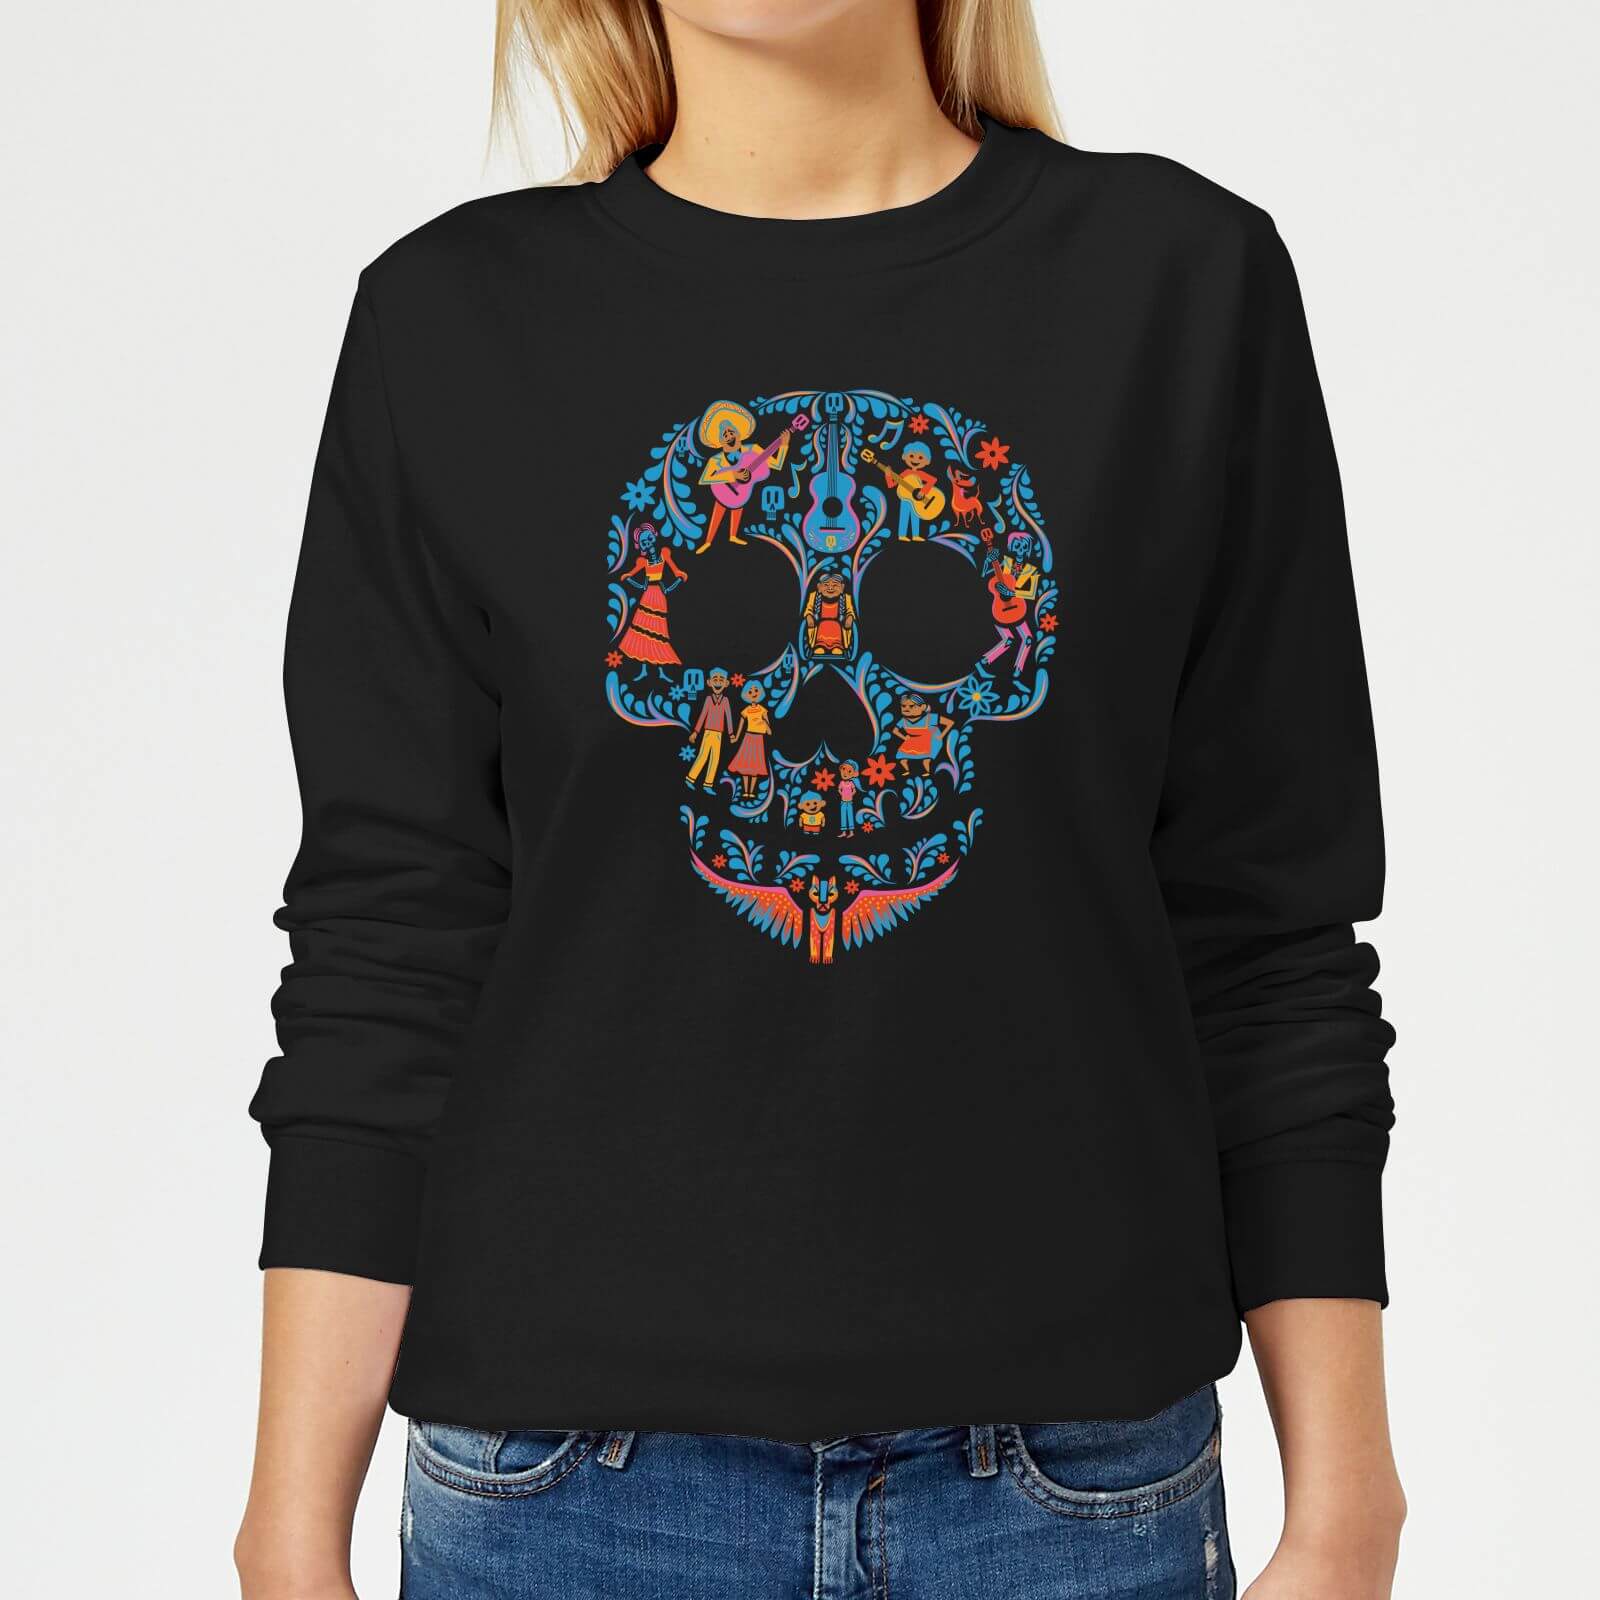 Coco Skull Pattern Women's Sweatshirt - Black - XS